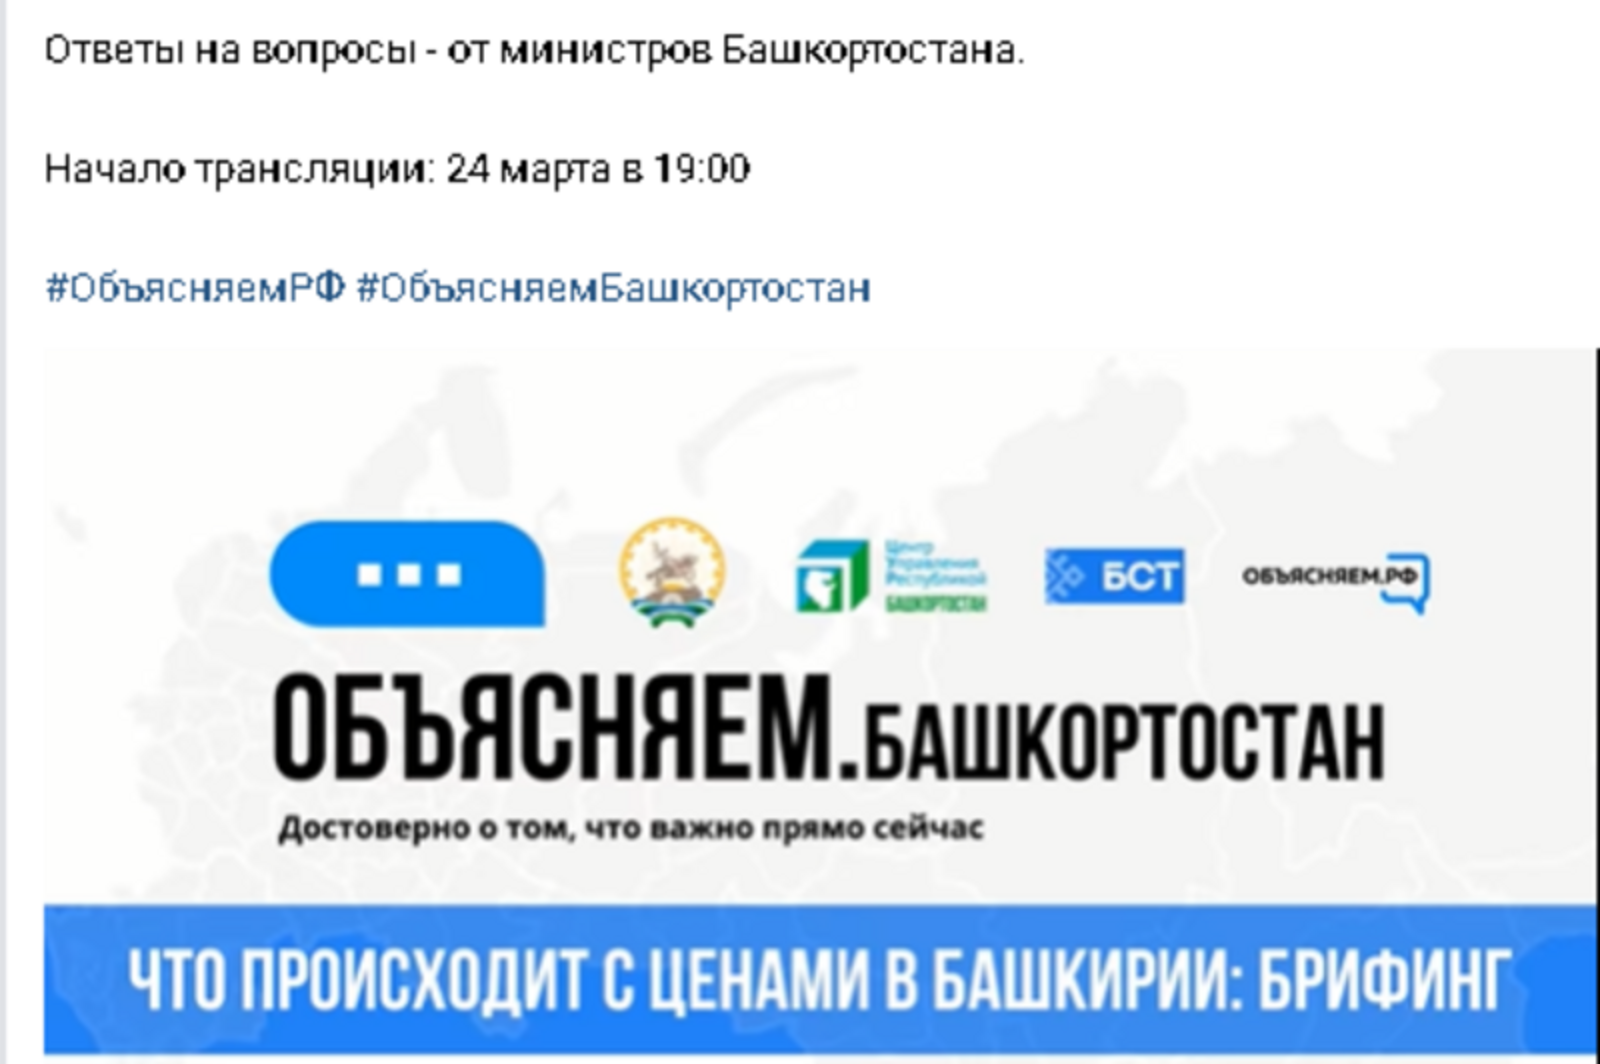 В Республике Башкортостан с 4 марта возобновлена диспансеризация